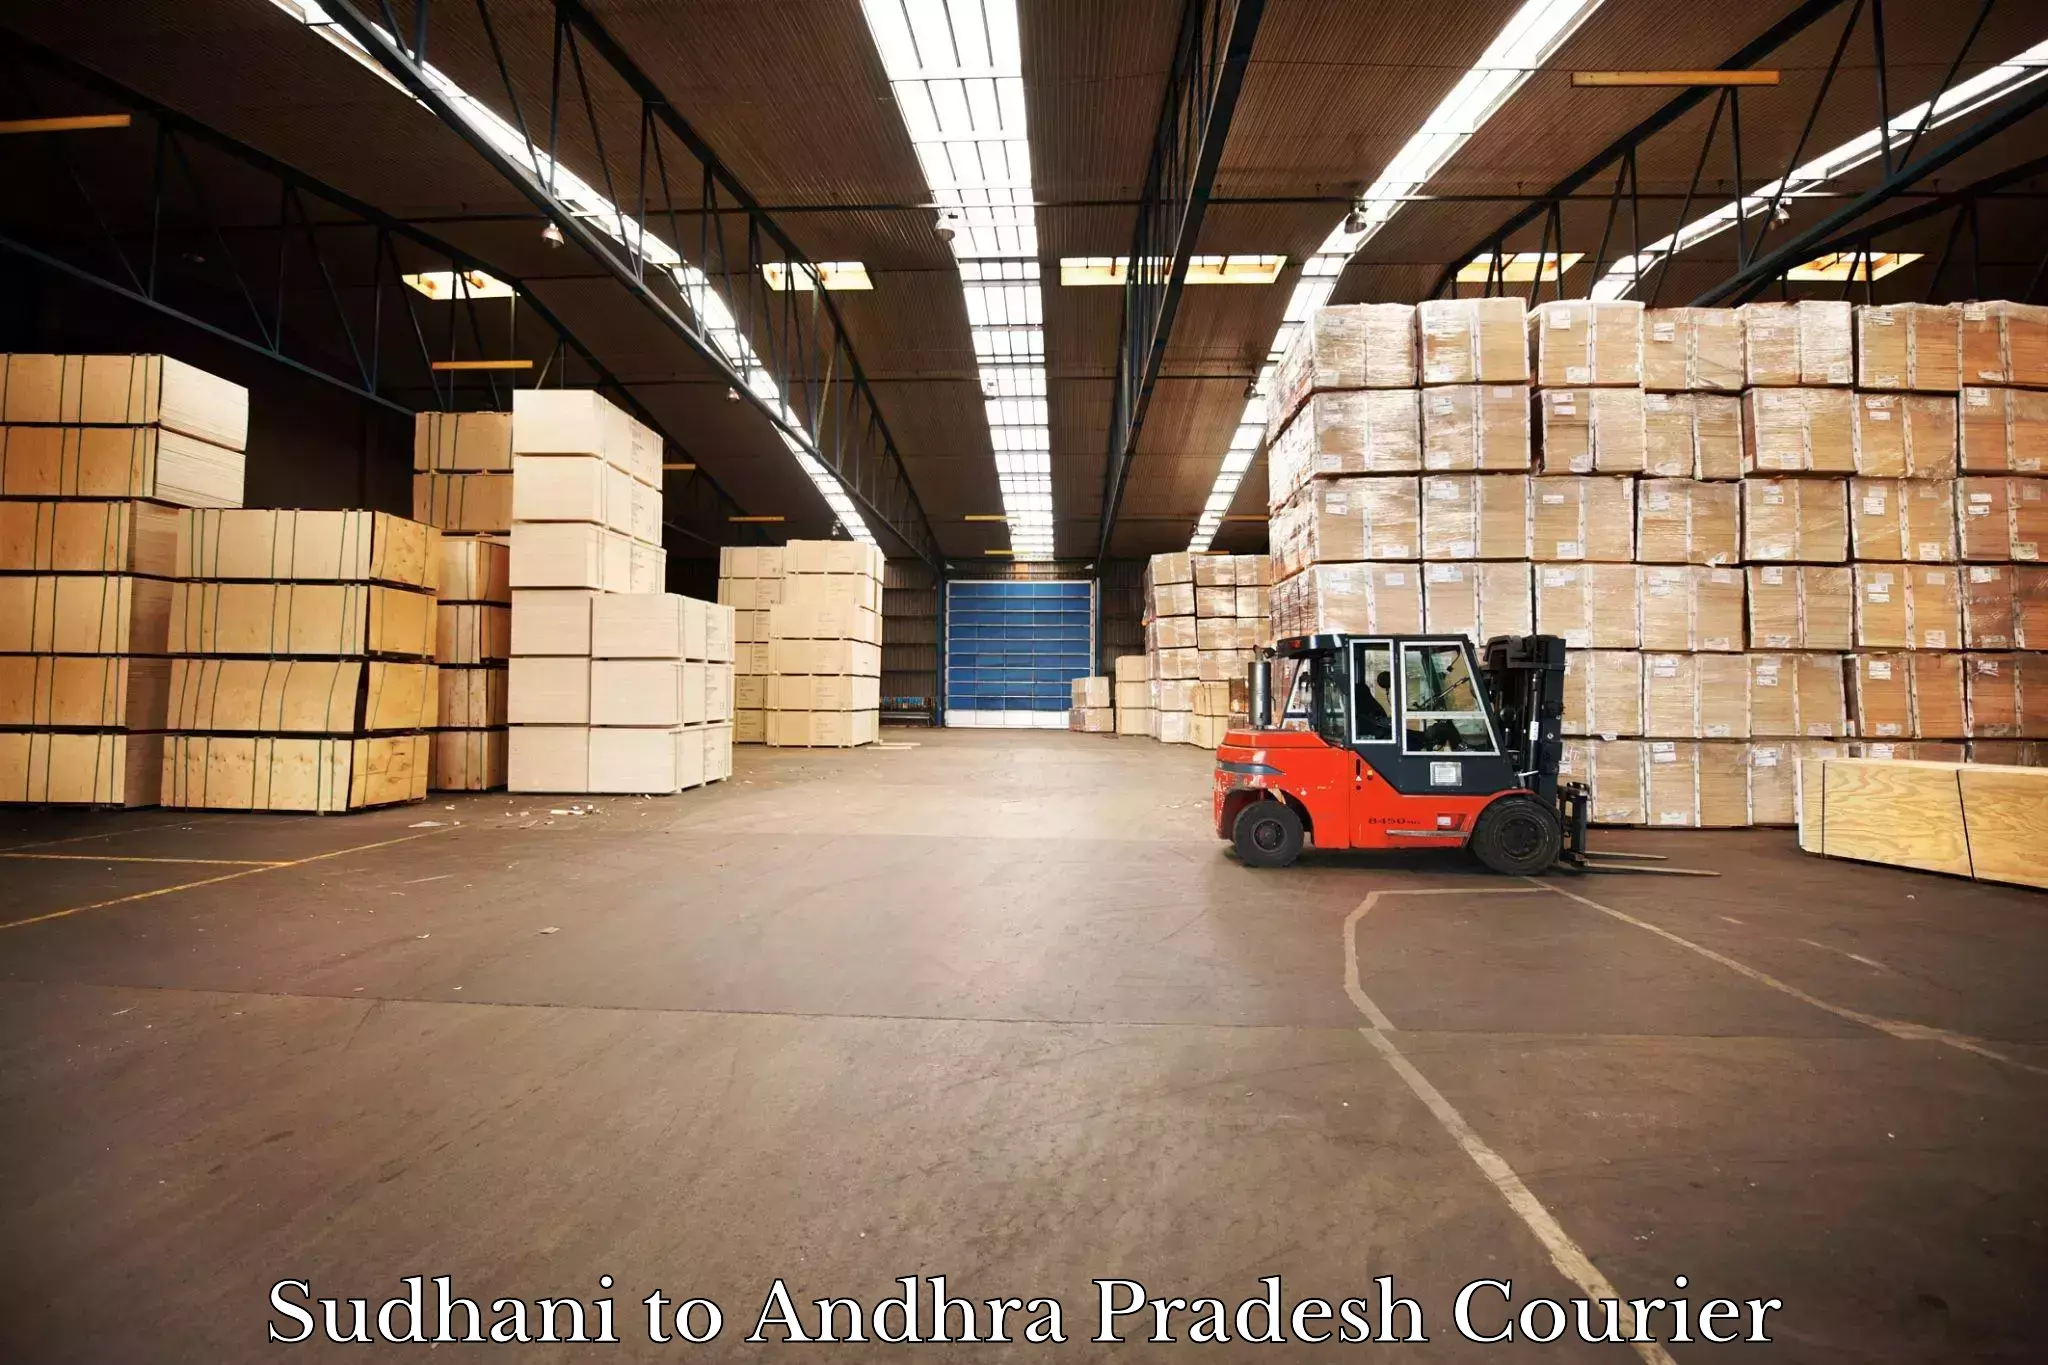 High-capacity parcel service Sudhani to Rajayyapeta